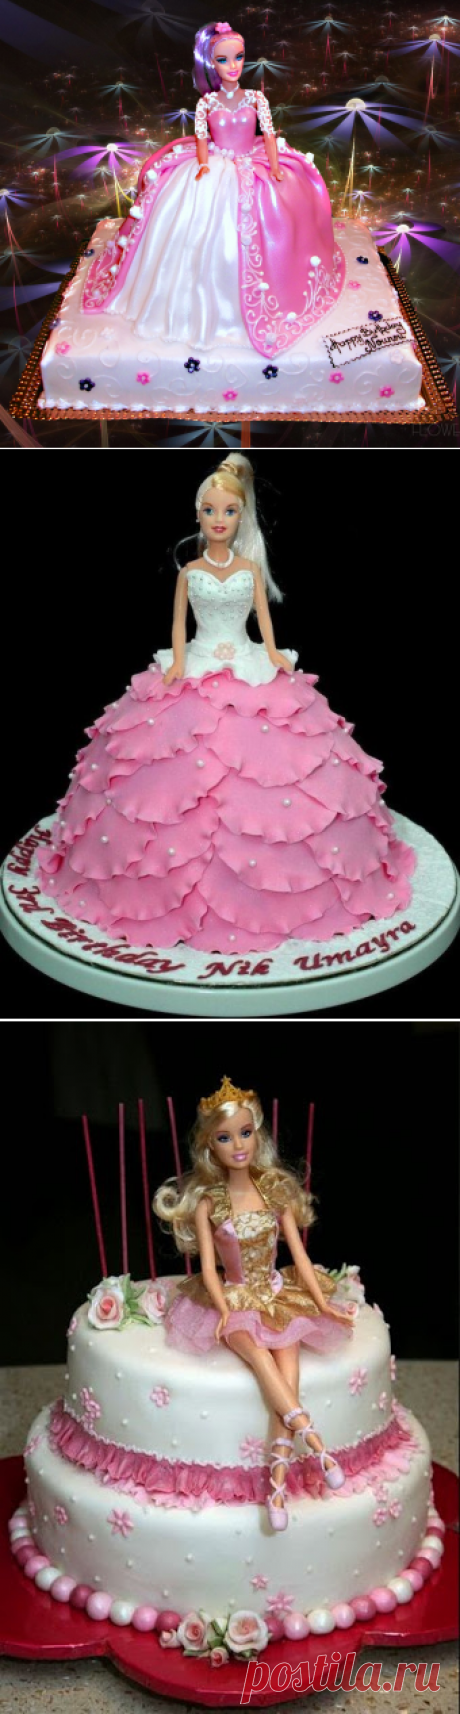 Barbie Birthday Cakes - kenko-seikatsu.info